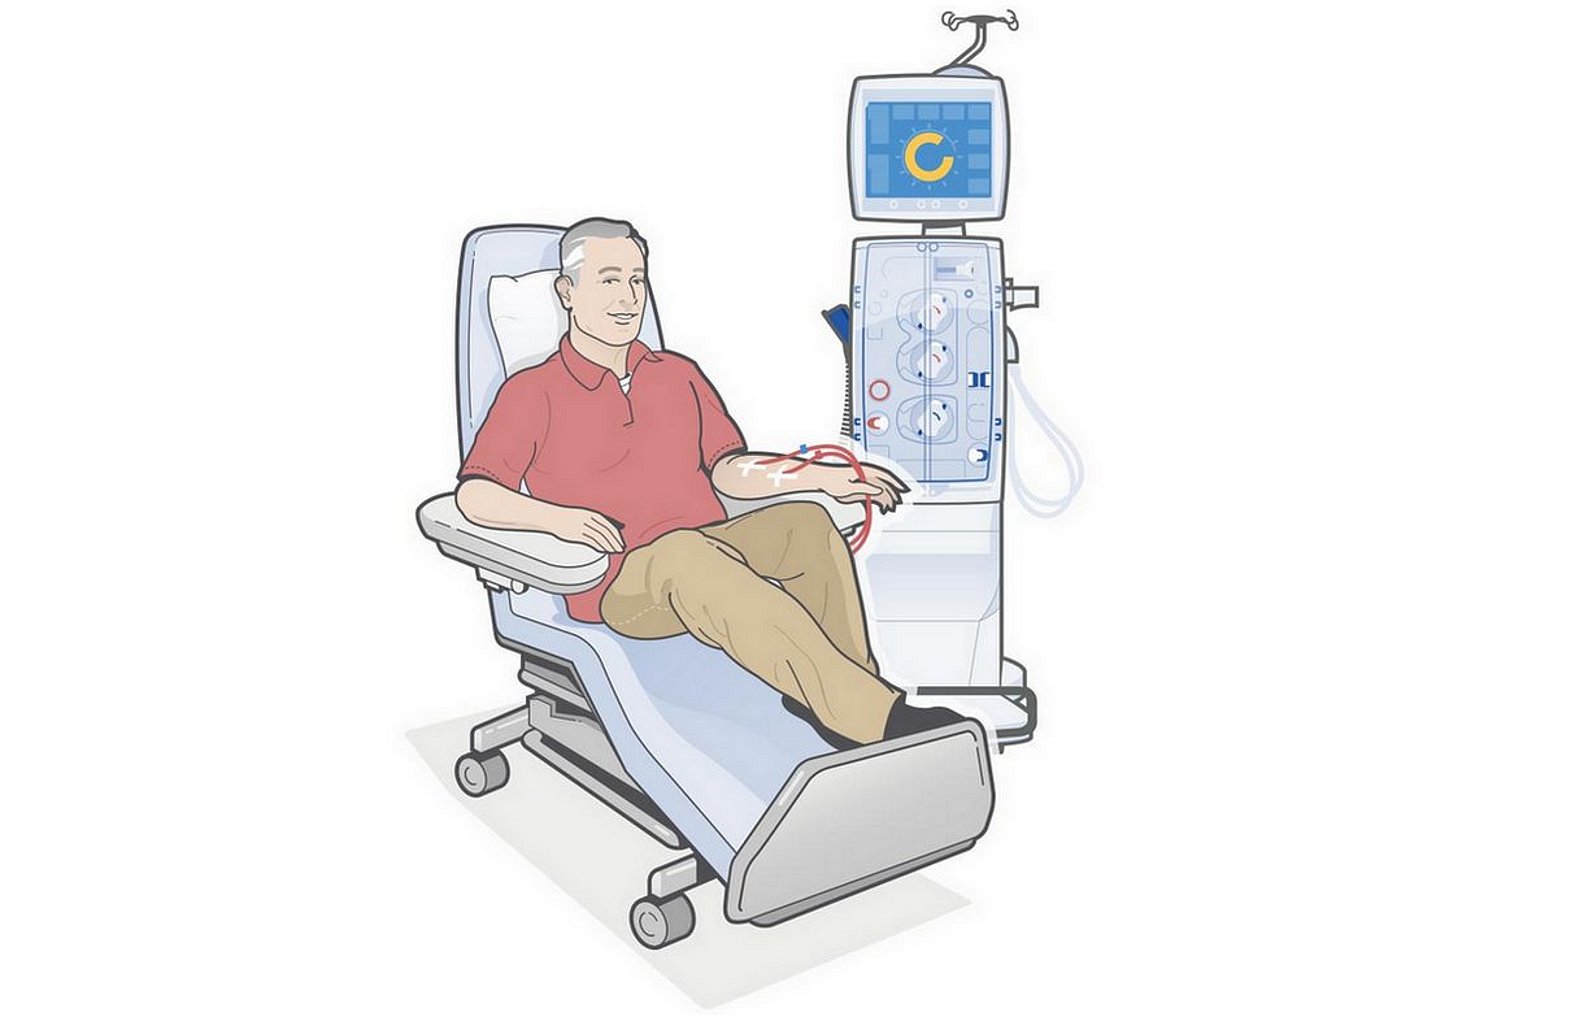 Patient får hemodialysbehandling (illustration)